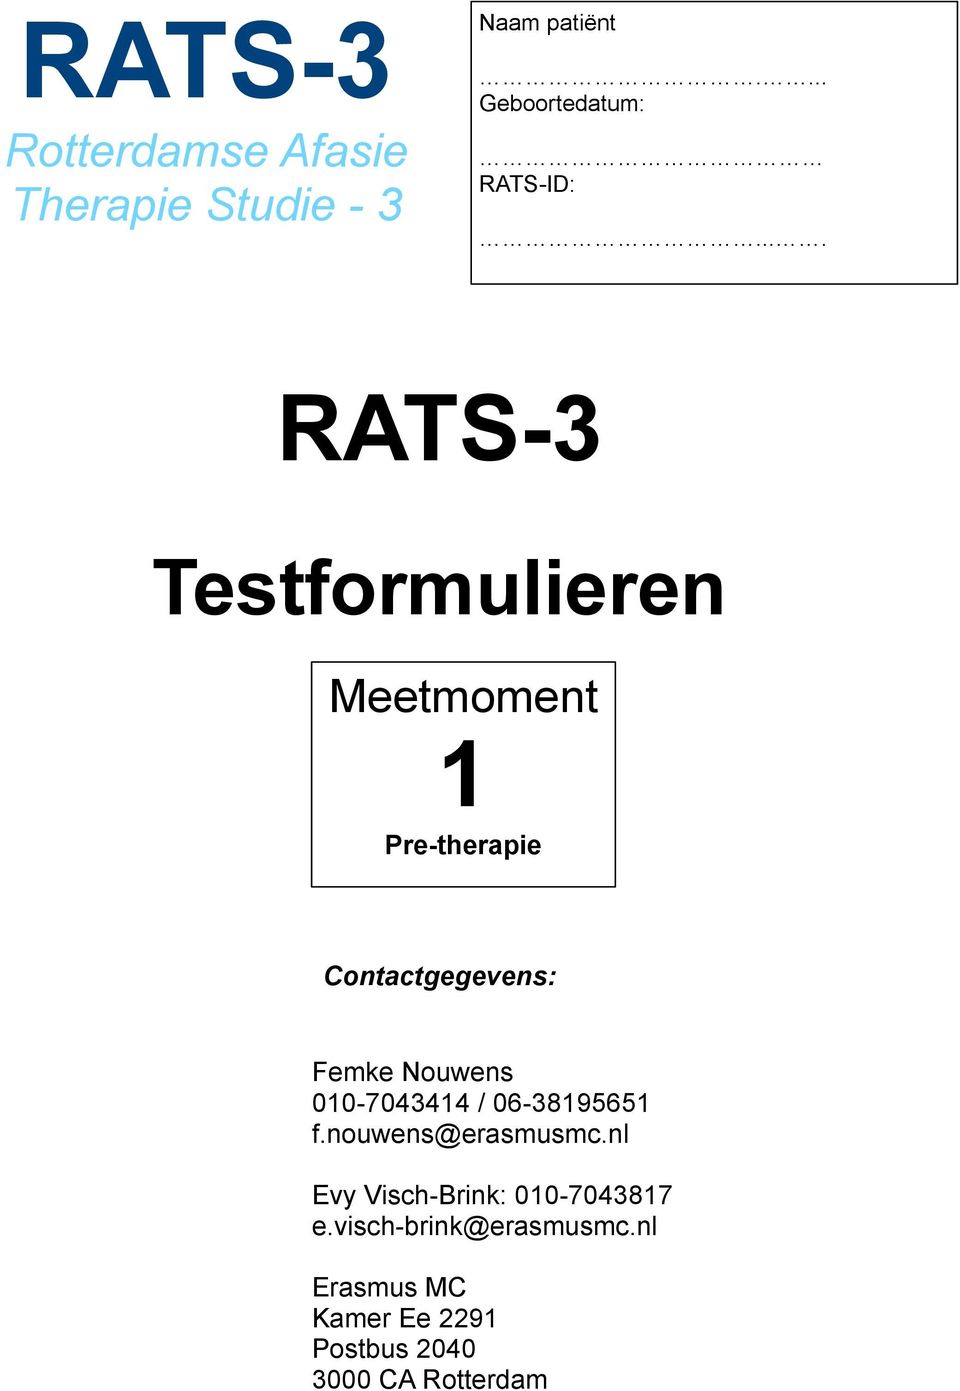 ... RATS-3 Testformulieren Meetmoment 1 Pre-therapie Contactgegevens: Femke